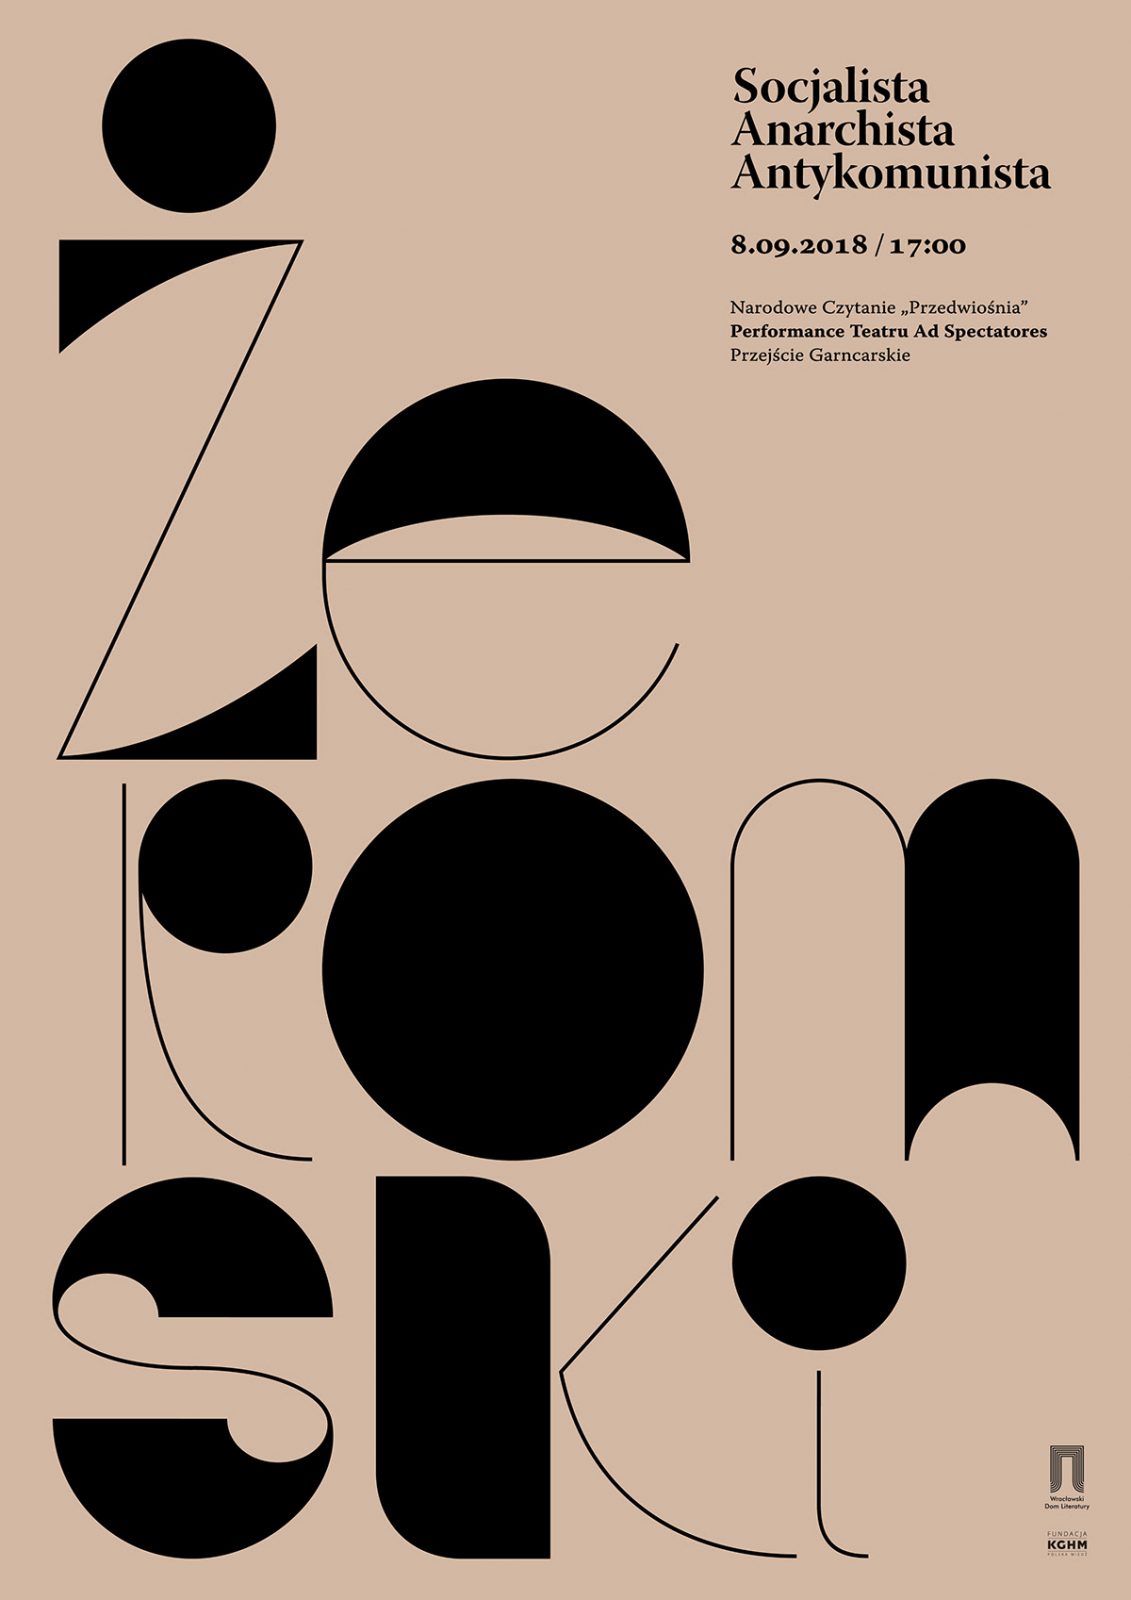 Marta Przeciszewska's Modern Take on Polish Poster Design